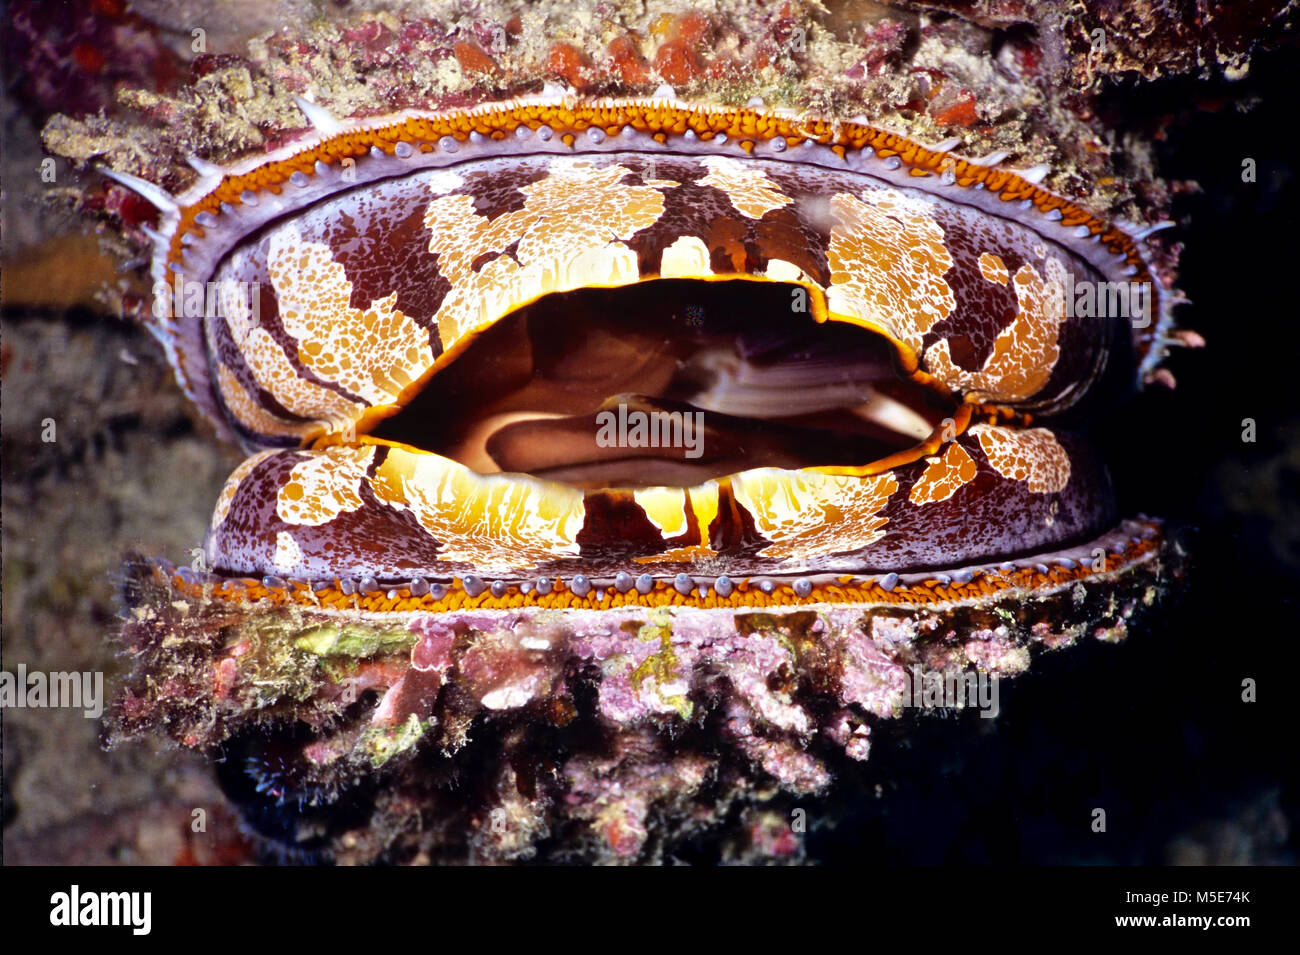 Un ostrica spinosa (Spondylus varius: 18 cm.). Nonostante il suo nome comune, questa specie è più strettamente correlati alle conchiglie dei pellegrini e altri pettinidi rispetto per le ostriche. I cementi di esso stesso saldamente a una parte rocciosa della barriera corallina dove - come la maggior parte dei molluschi bivalvi - si utilizza il filtro di alimentazione per la cattura di plancton. Essa si apre e si chiude il suo mantello per mezzo dei muscoli potenti operando una sfera e meccanismo di presa. Essa si chiude tempestivamente quando allarmato ma, se si attende, sarà aperto. Esso ha una ben sviluppata medio mantello e tentacoli sensoriali insieme con più occhi intorno ai margini della shell. Fotografato in acque Balinese, Indonesia. Foto Stock